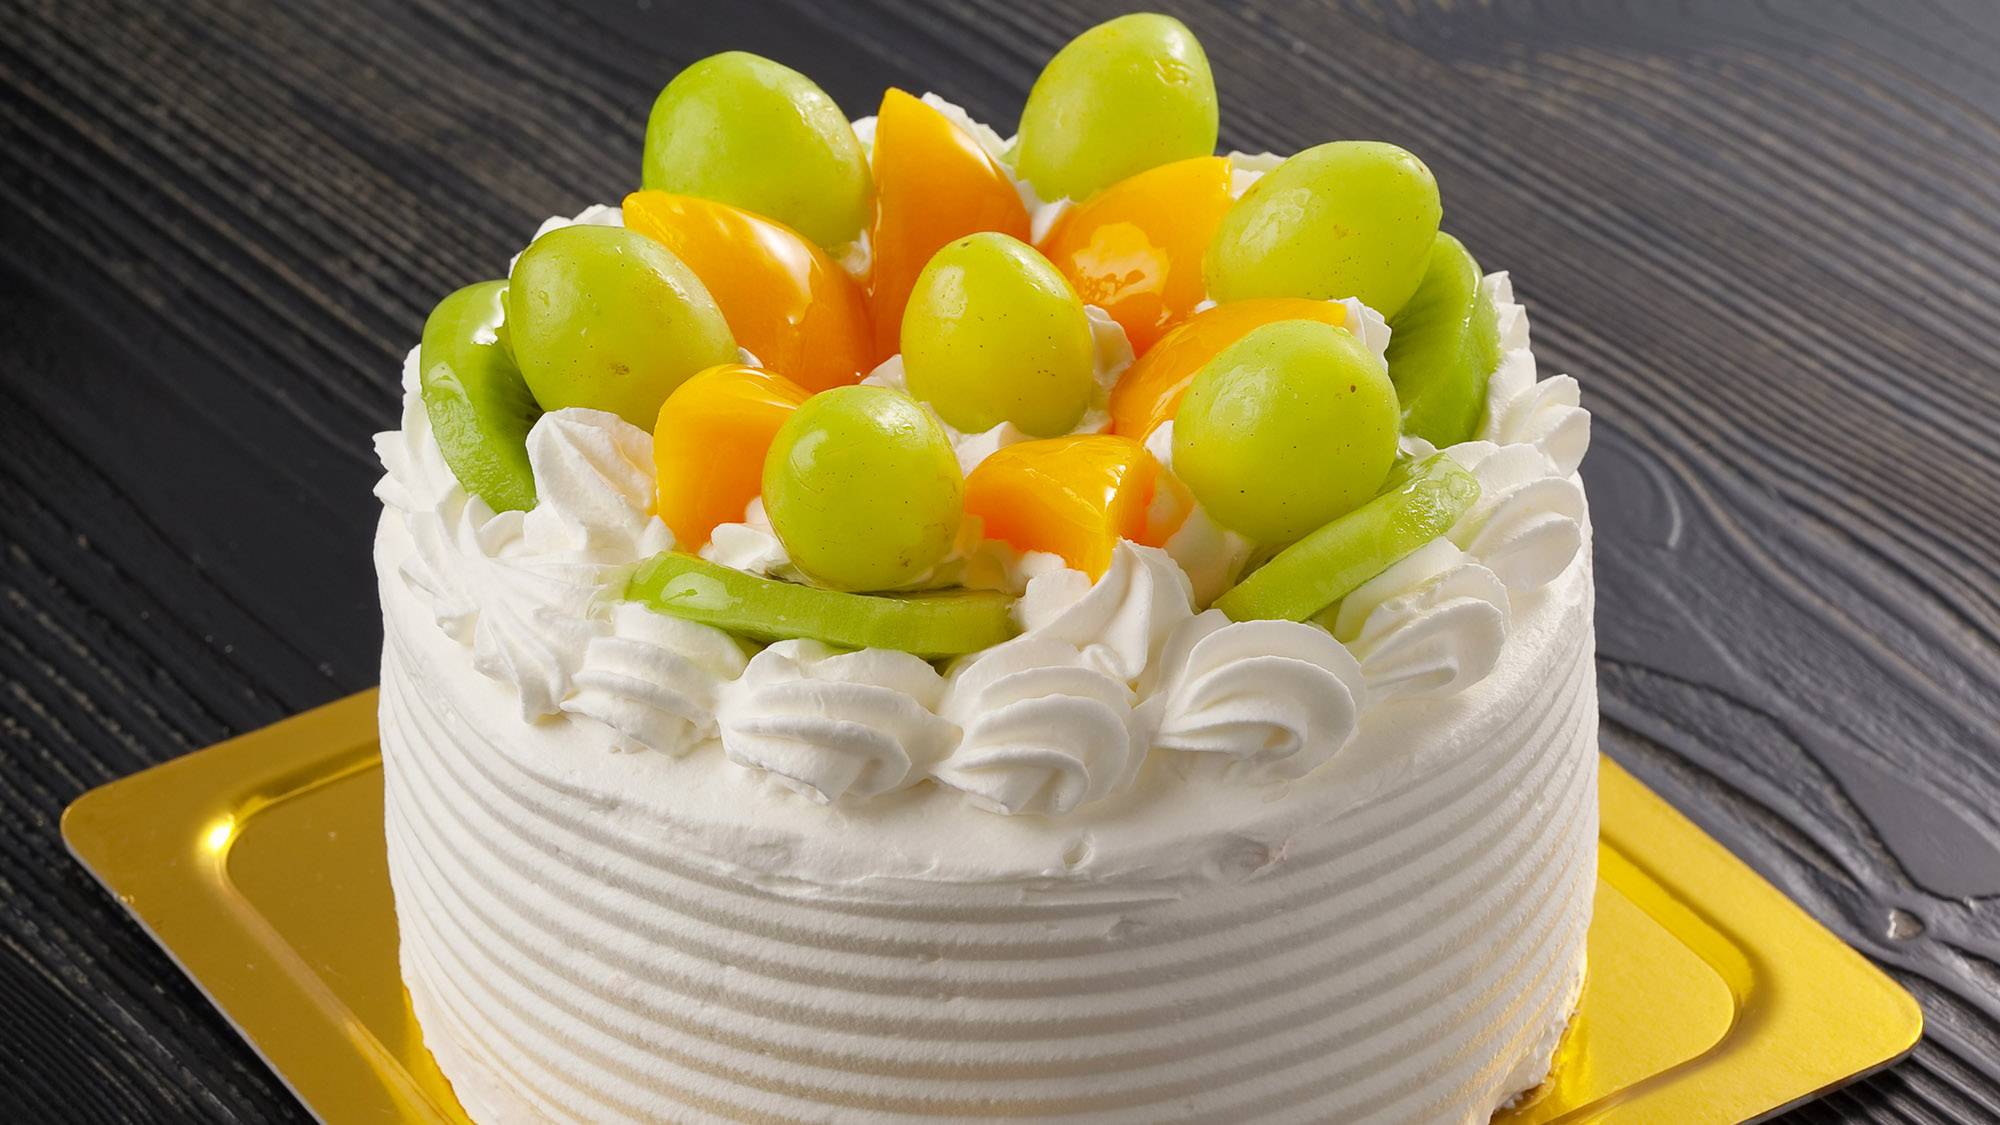 ・【アニバーサリー】大切な方のお祝いにフルーツをふんだんに使用したケーキをどうぞ♪